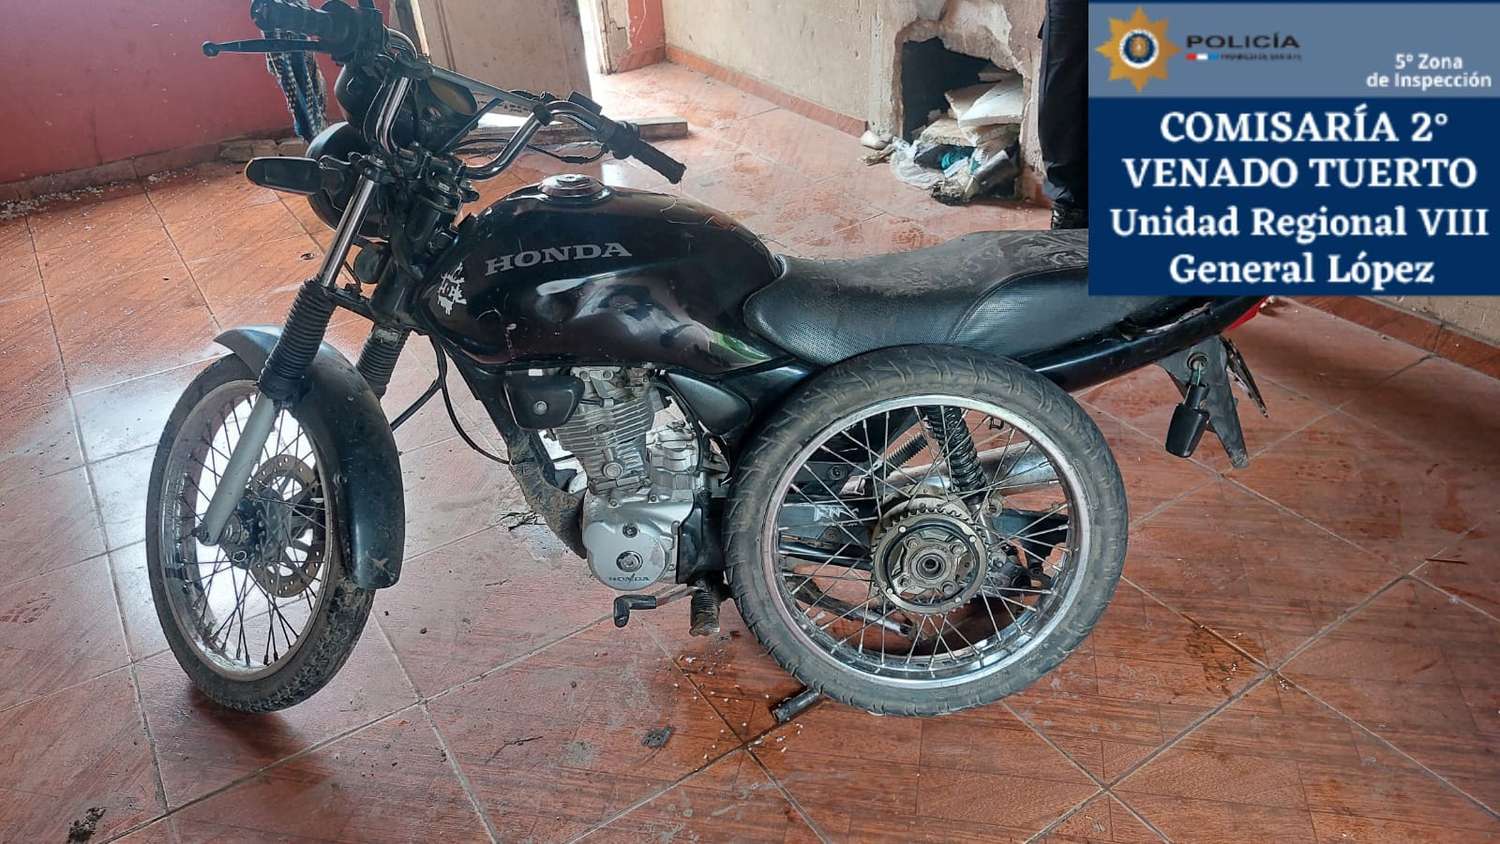 La Policía recuperó un moto robada en Venado Tuerto